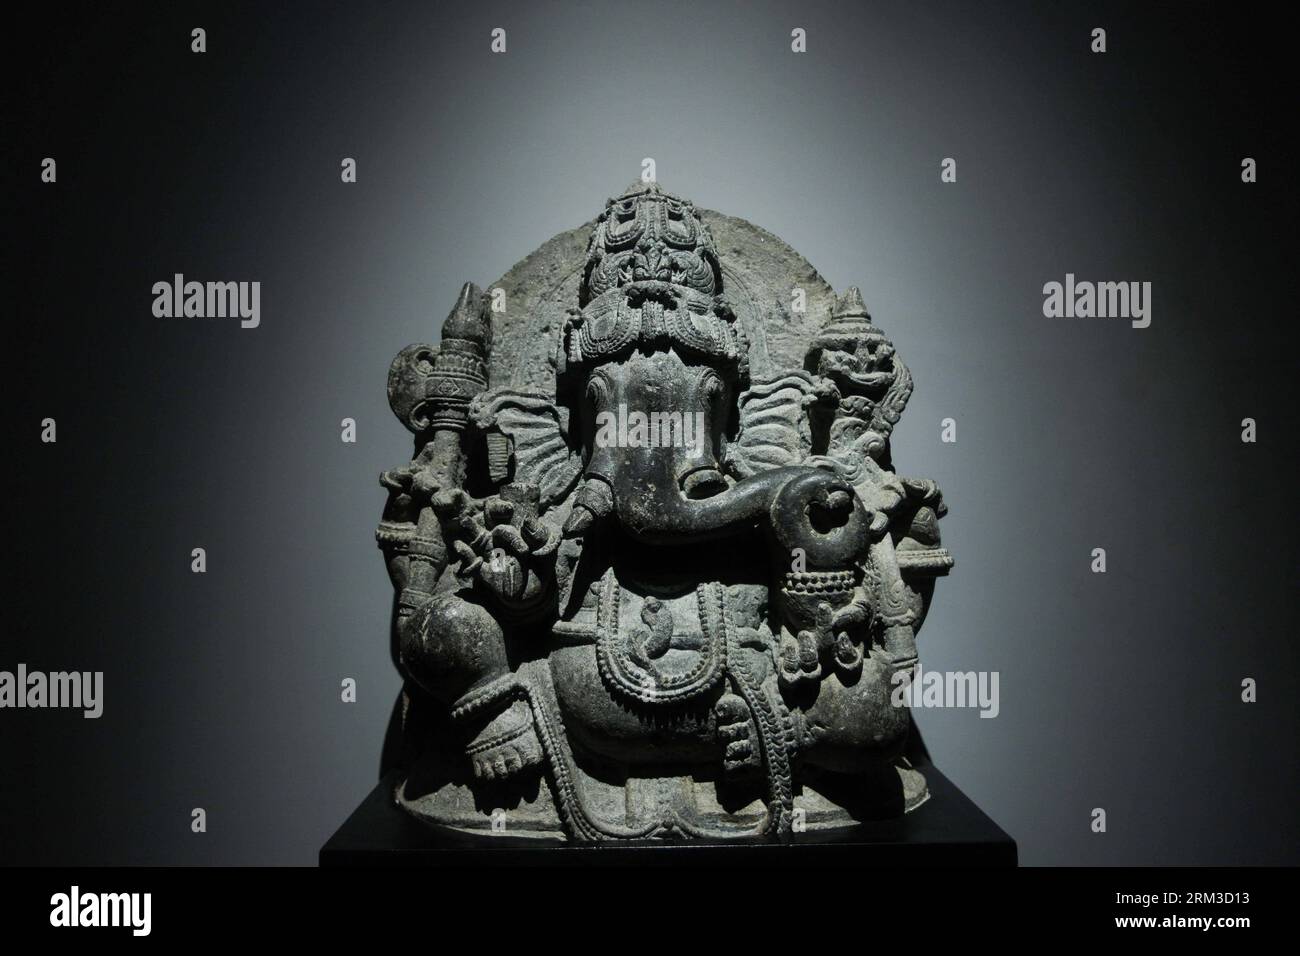 Bildnummer: 60143561 Datum: 17.07.2013 Copyright: imago/Xinhua (130717) -- MUMBAI, 17. Juli 2013 (Xinhua) -- eine antike Statue von Ganesha, einem Gott der hinduistischen Religion, wird im Chhatrapati Shivaji Maharaj Vastu Sangrahalaya (CSMVS) in Mumbai, Indien, 17. Juli 2013 gesehen. Das CSMVS, ehemals Prince of Wales Museum of Western India, ist das größte und bekannteste Museum in Mumbai. Die Sammlung umfasst nicht nur verschiedene Kunstformen aus Indien, China, Nepal, Japan sowie Europa, sondern auch viele Exemplare indischer Naturgeschichte, die die verschiedenen Kulturen in verschiedenen Geschichtsbüchern widerspiegelt Stockfoto